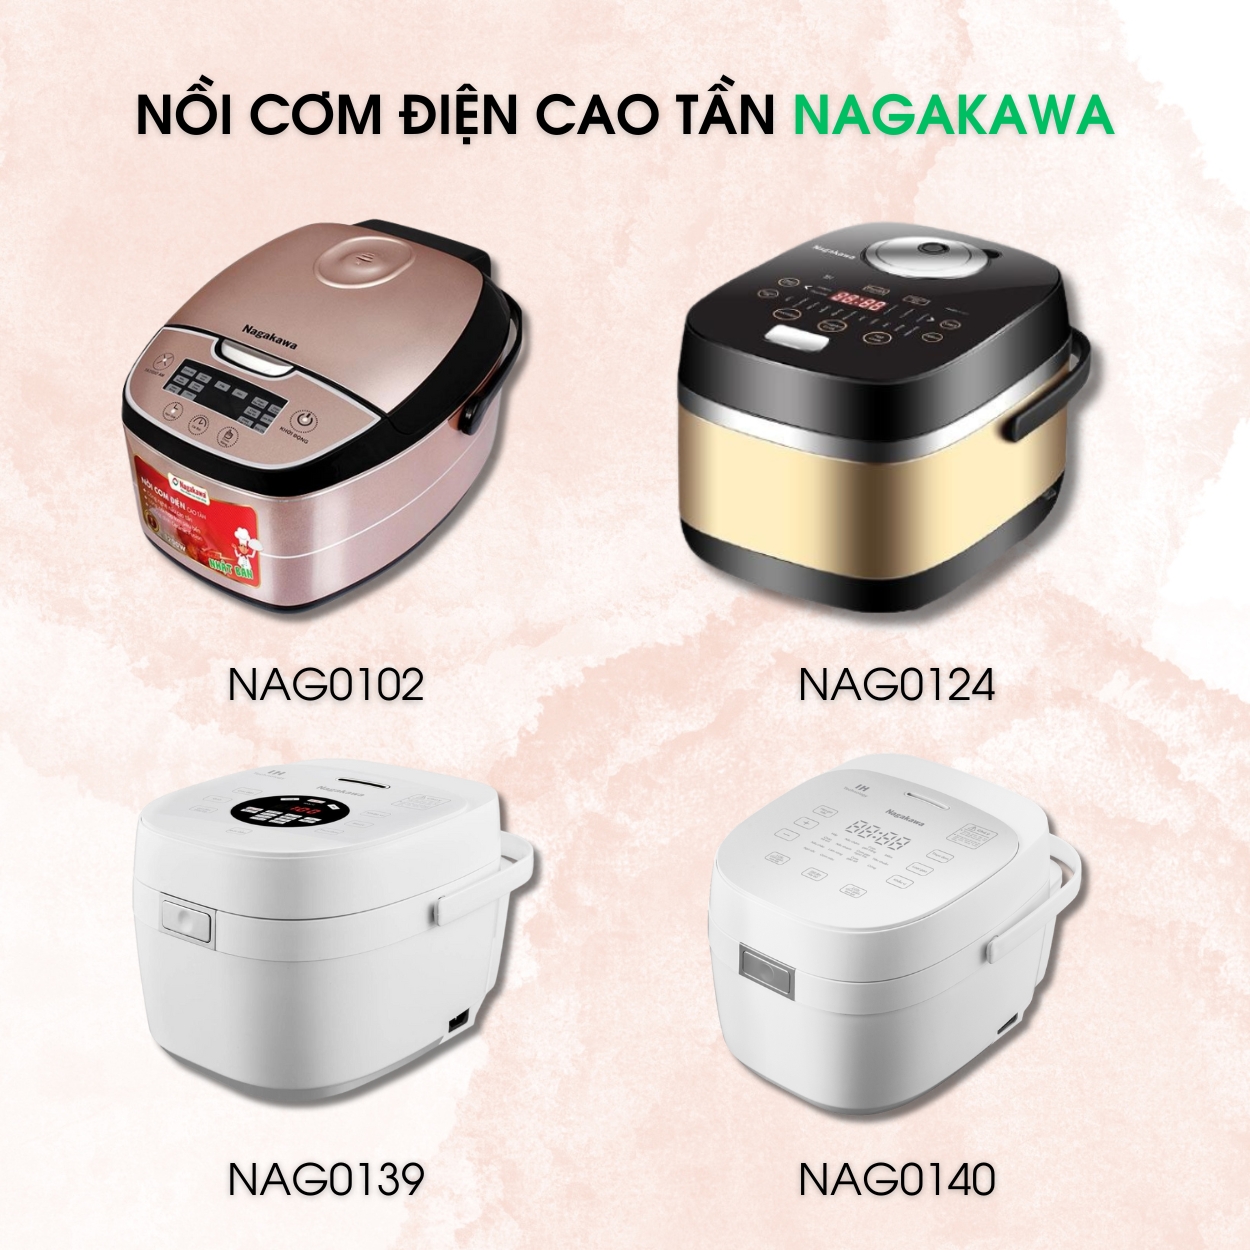 Thiết kế của 4 mã sản phẩm nồi cơm điện cao tần Nagakawa luôn mang vẻ đẹp sang trọng, tinh tế phù hợp với nhiều không gian bếp khác nhau